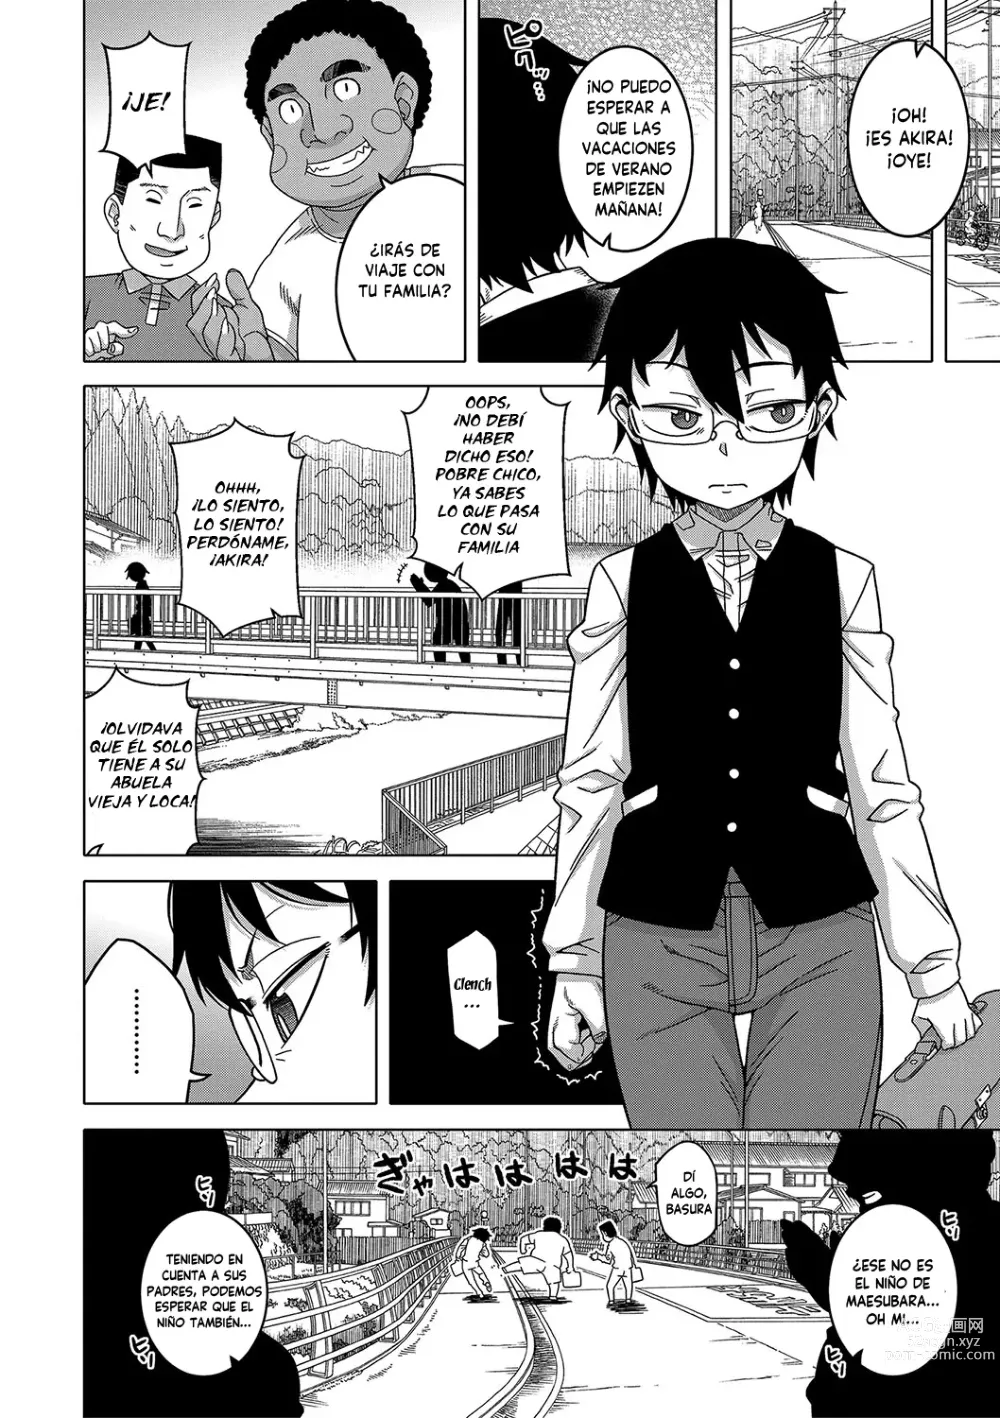 Page 7 of manga Kami-sama no Tsukurikata